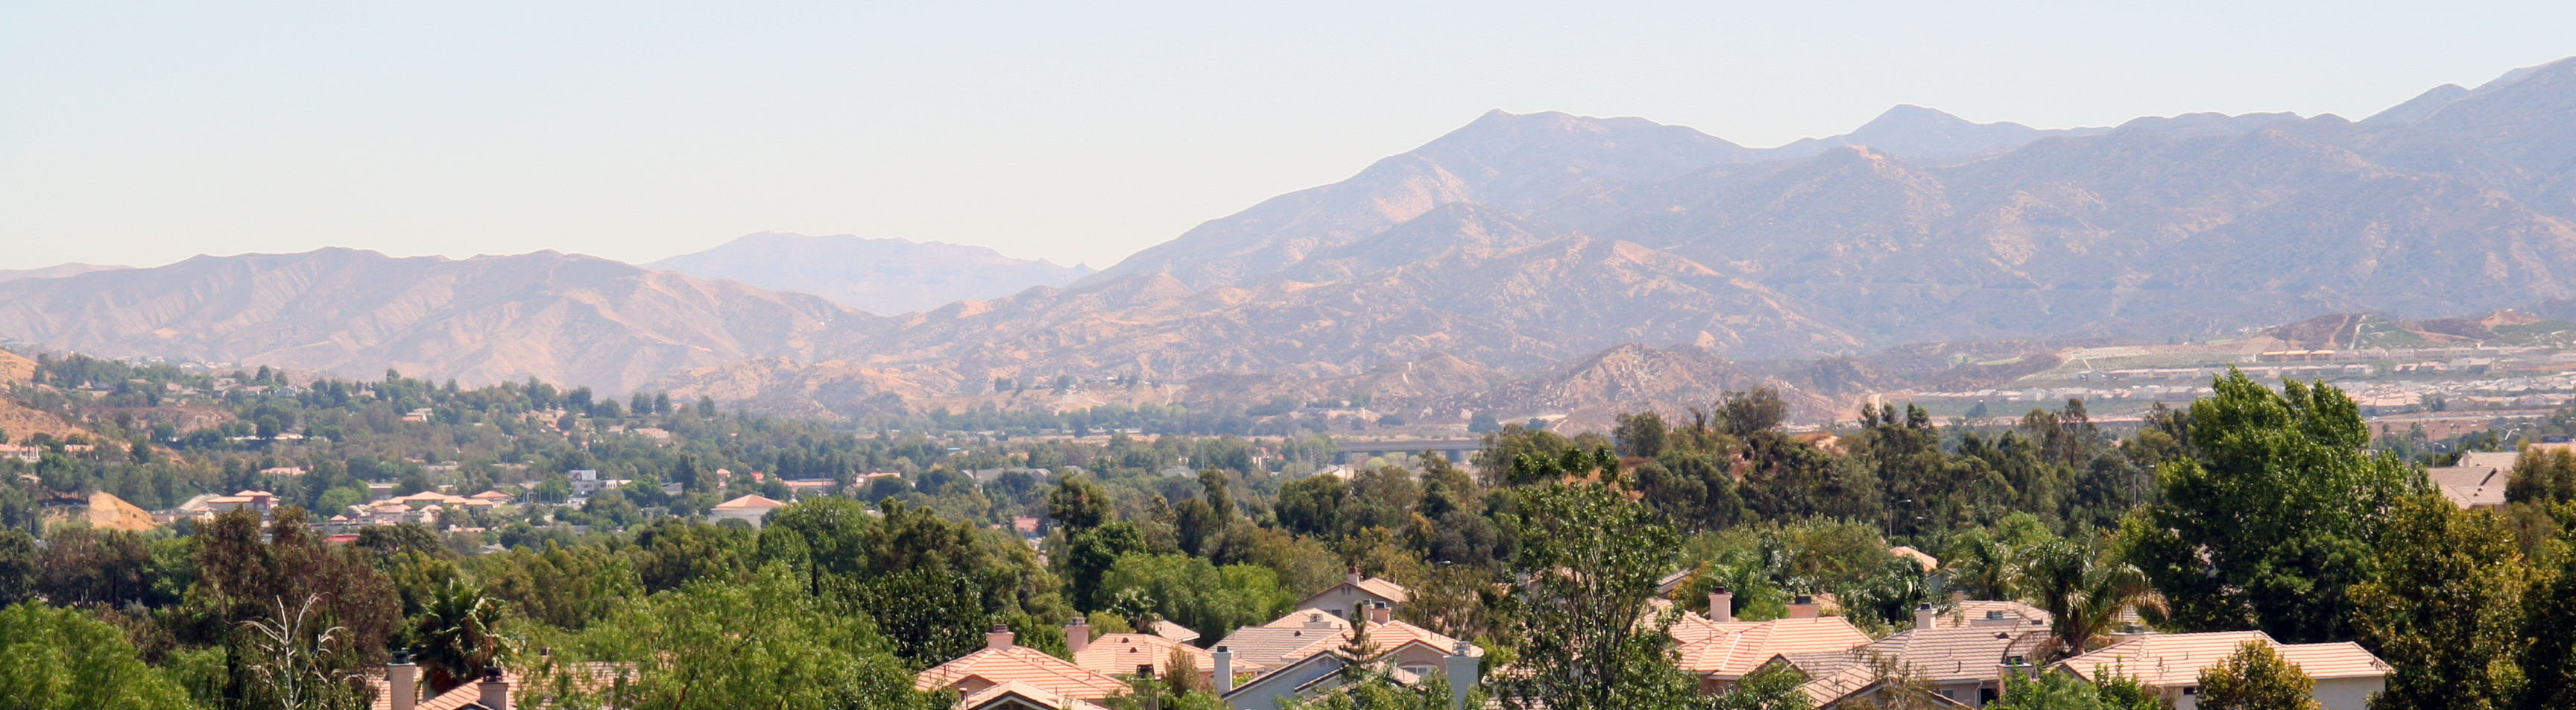 Canyon Country CA Real Estate - Santa Clarita CA Real Estate